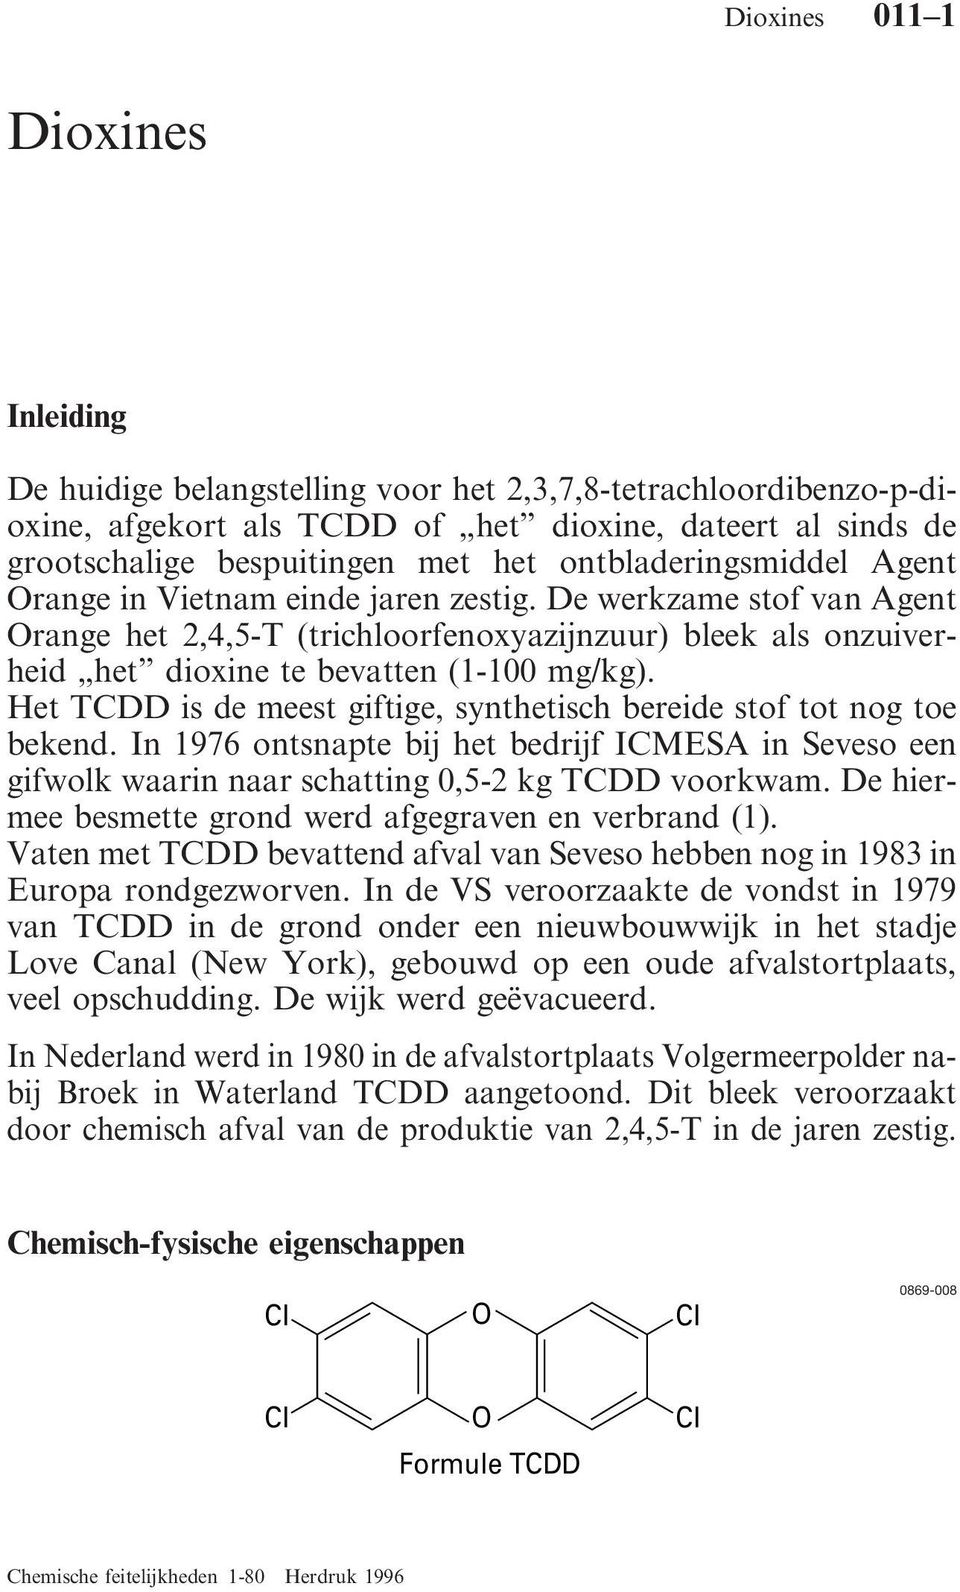 Het TCDD is de meest giftige, synthetisch bereide stof tot nog toe bekend. In 1976 ontsnapte bij het bedrijf ICMESA in Seveso een gifwolk waarin naar schatting 0,5-2 kg TCDD voorkwam.